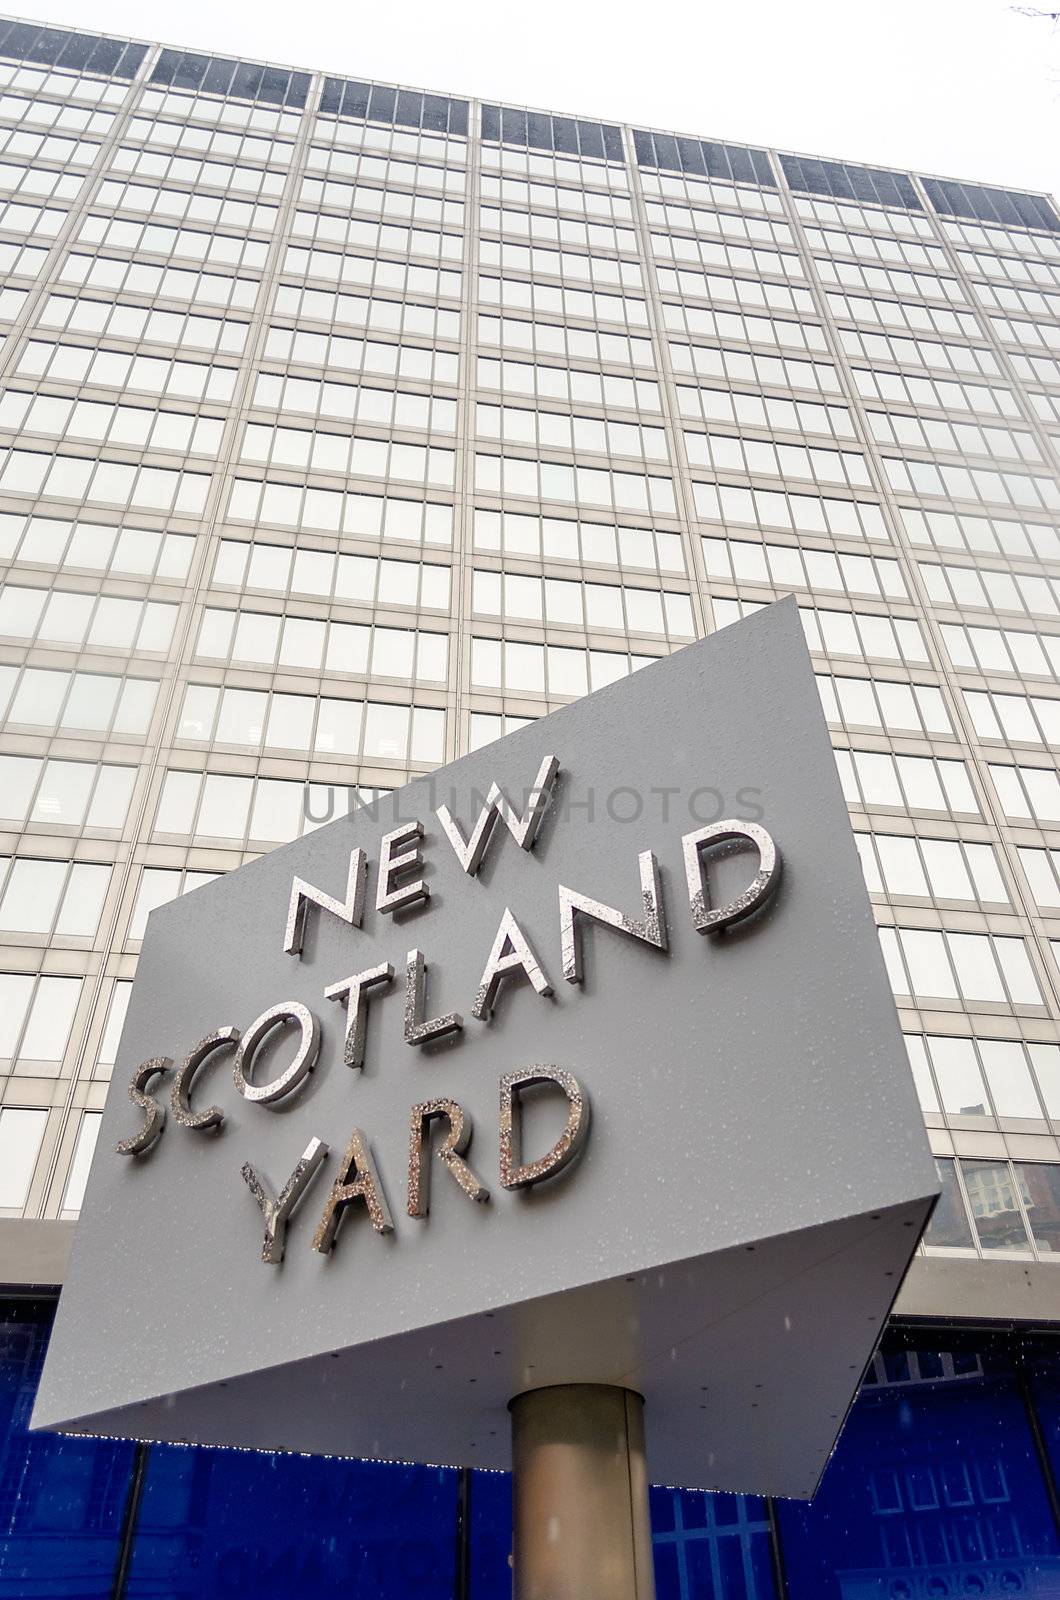 New Scotland Yard Building, London, UK by marcorubino